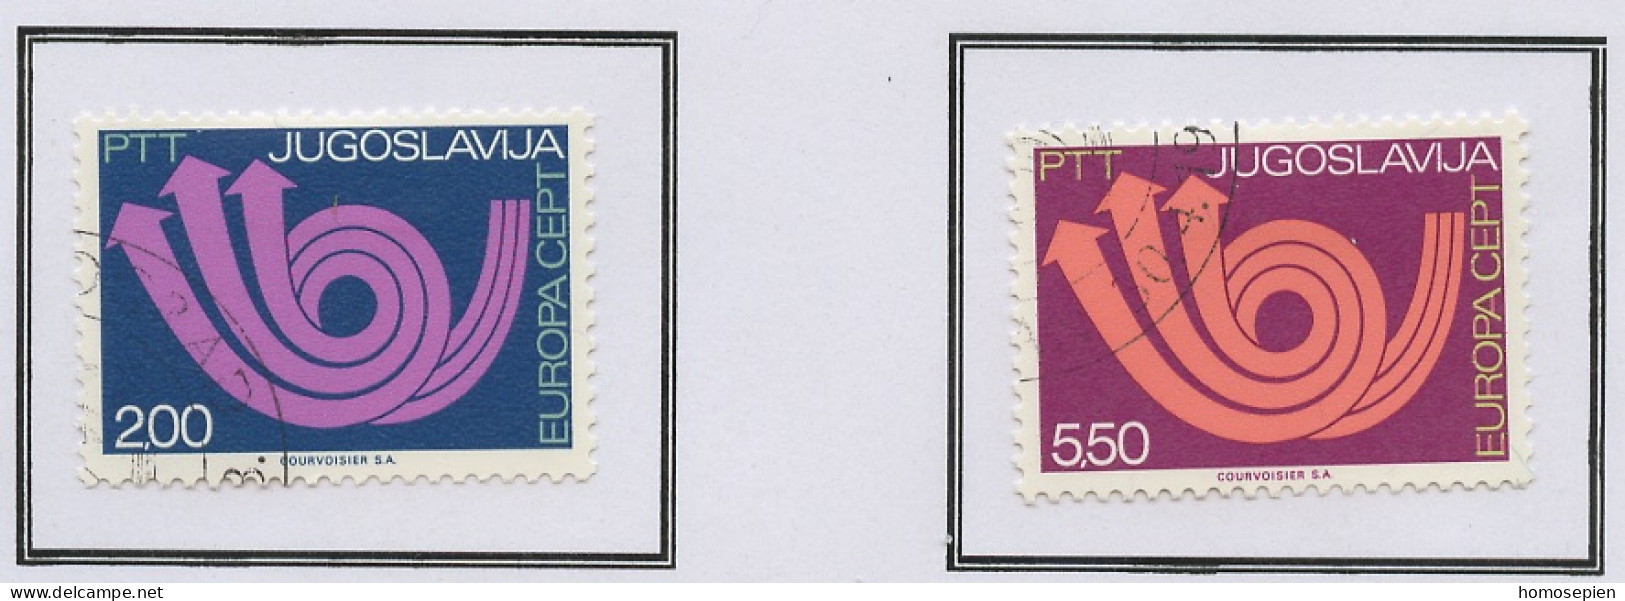 Europa CEPT 1973 Yougoslavie - Jugoslawien - Yugoslavia Y&T N°1390 à 1391 - Michel N°1507 à 1508 (o) - 1973